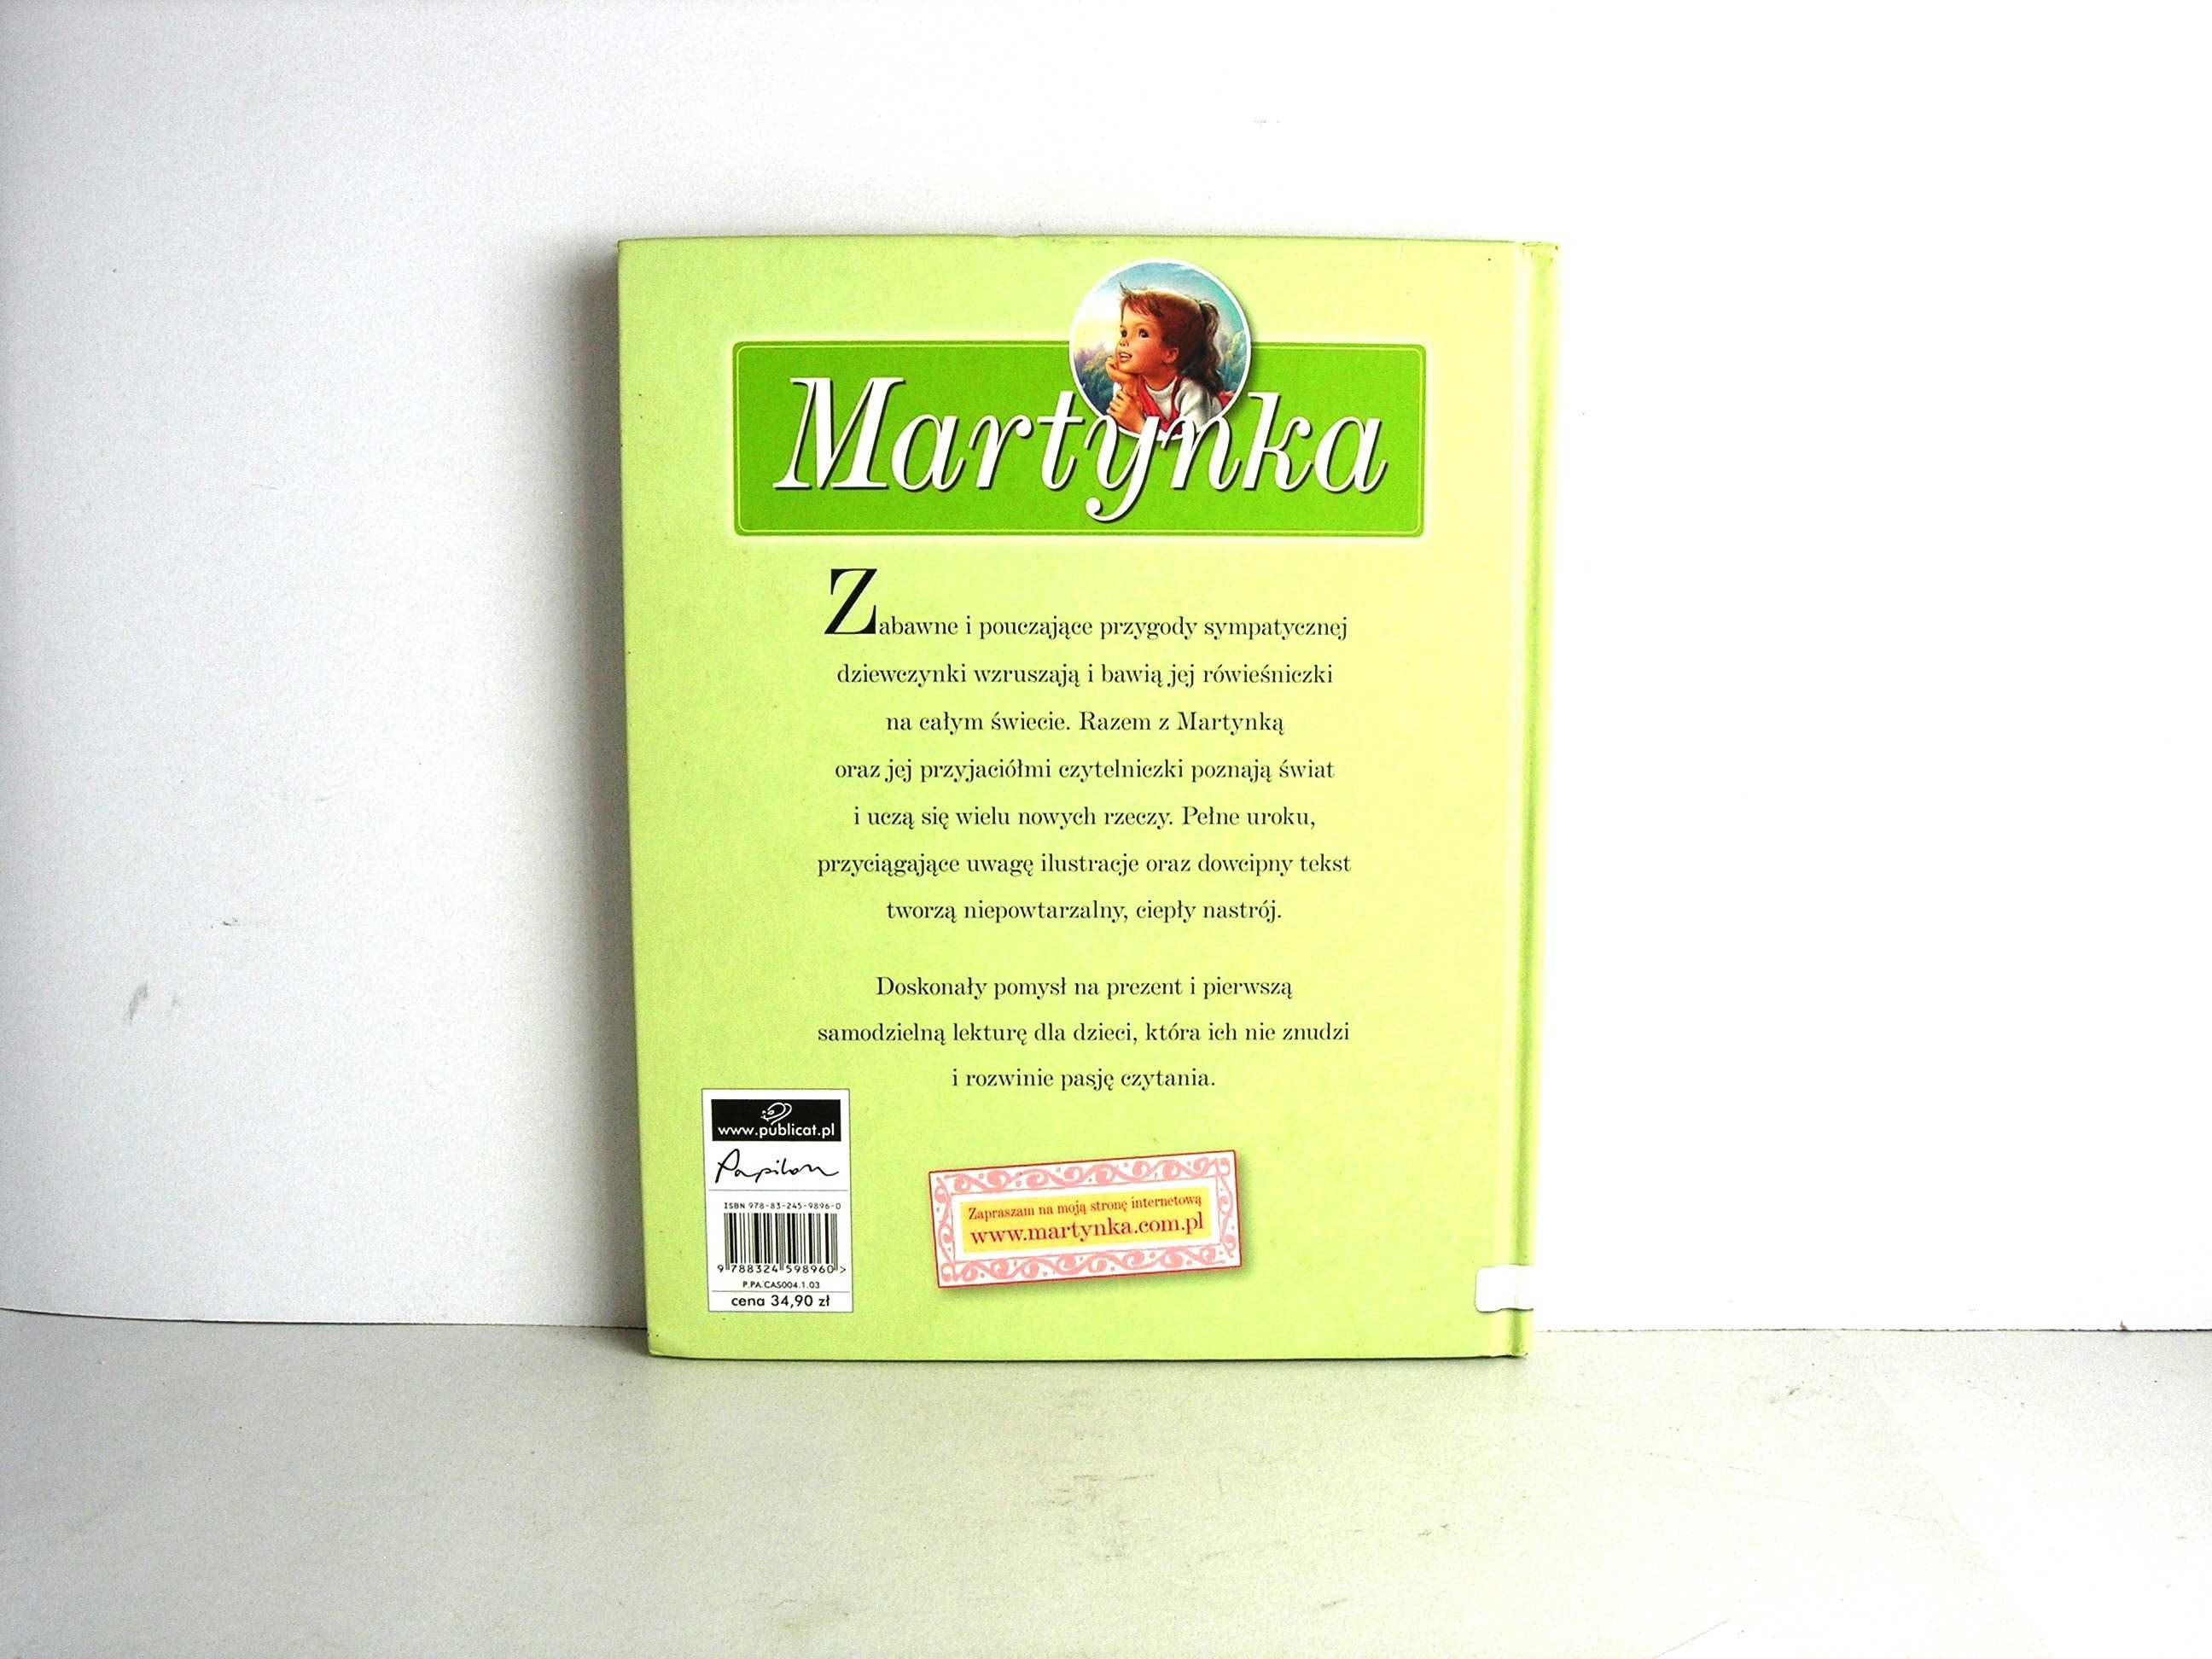 "Martynka - najlepsze przygody" Gilbert Delahaye wyd. Publicat 2008